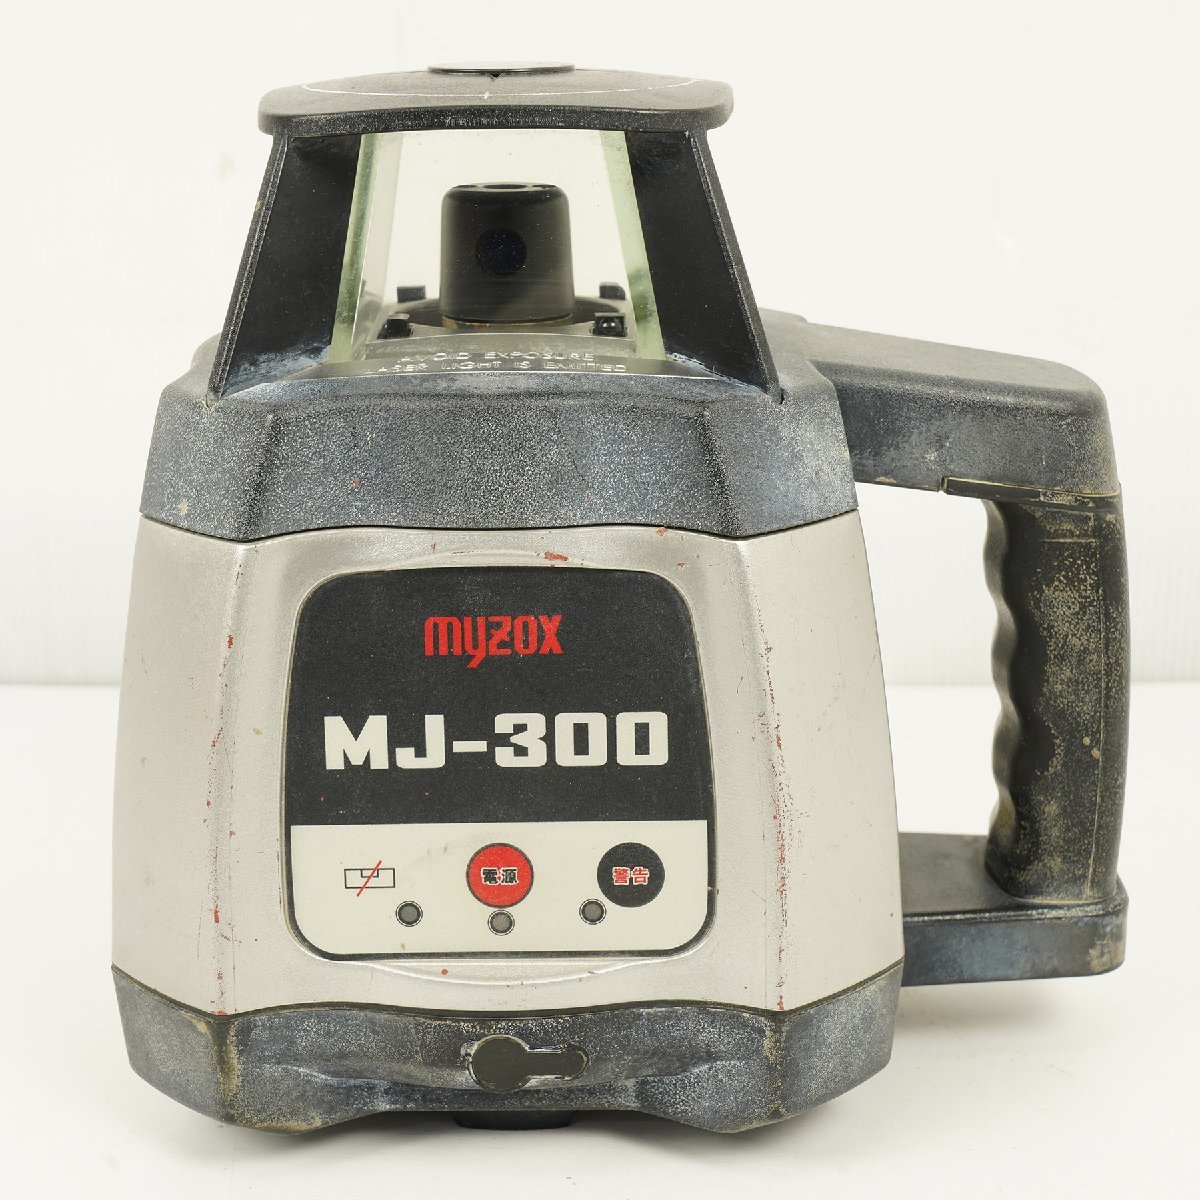 myzox マイゾックス MJ-300 自動整準レーザーレベル 受光器付き [B1225